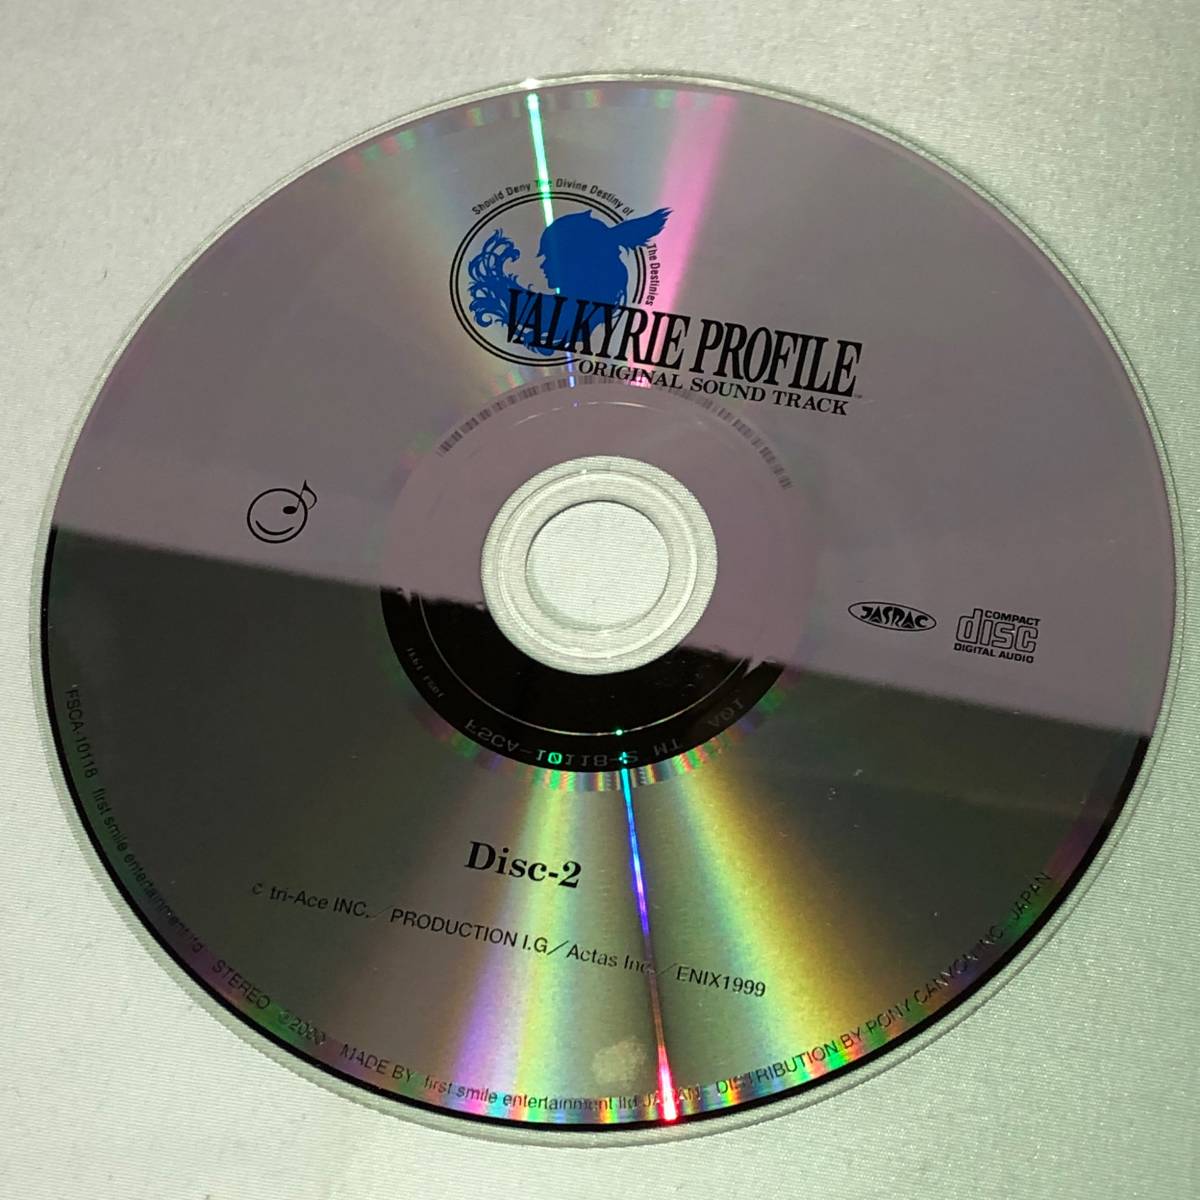 音楽CD ヴァルキリープロファイル オリジナルサウンドトラック FSCA-10118 VALKYRIE PROFILE ORIGINAL SOUND TRACK PS1_画像4